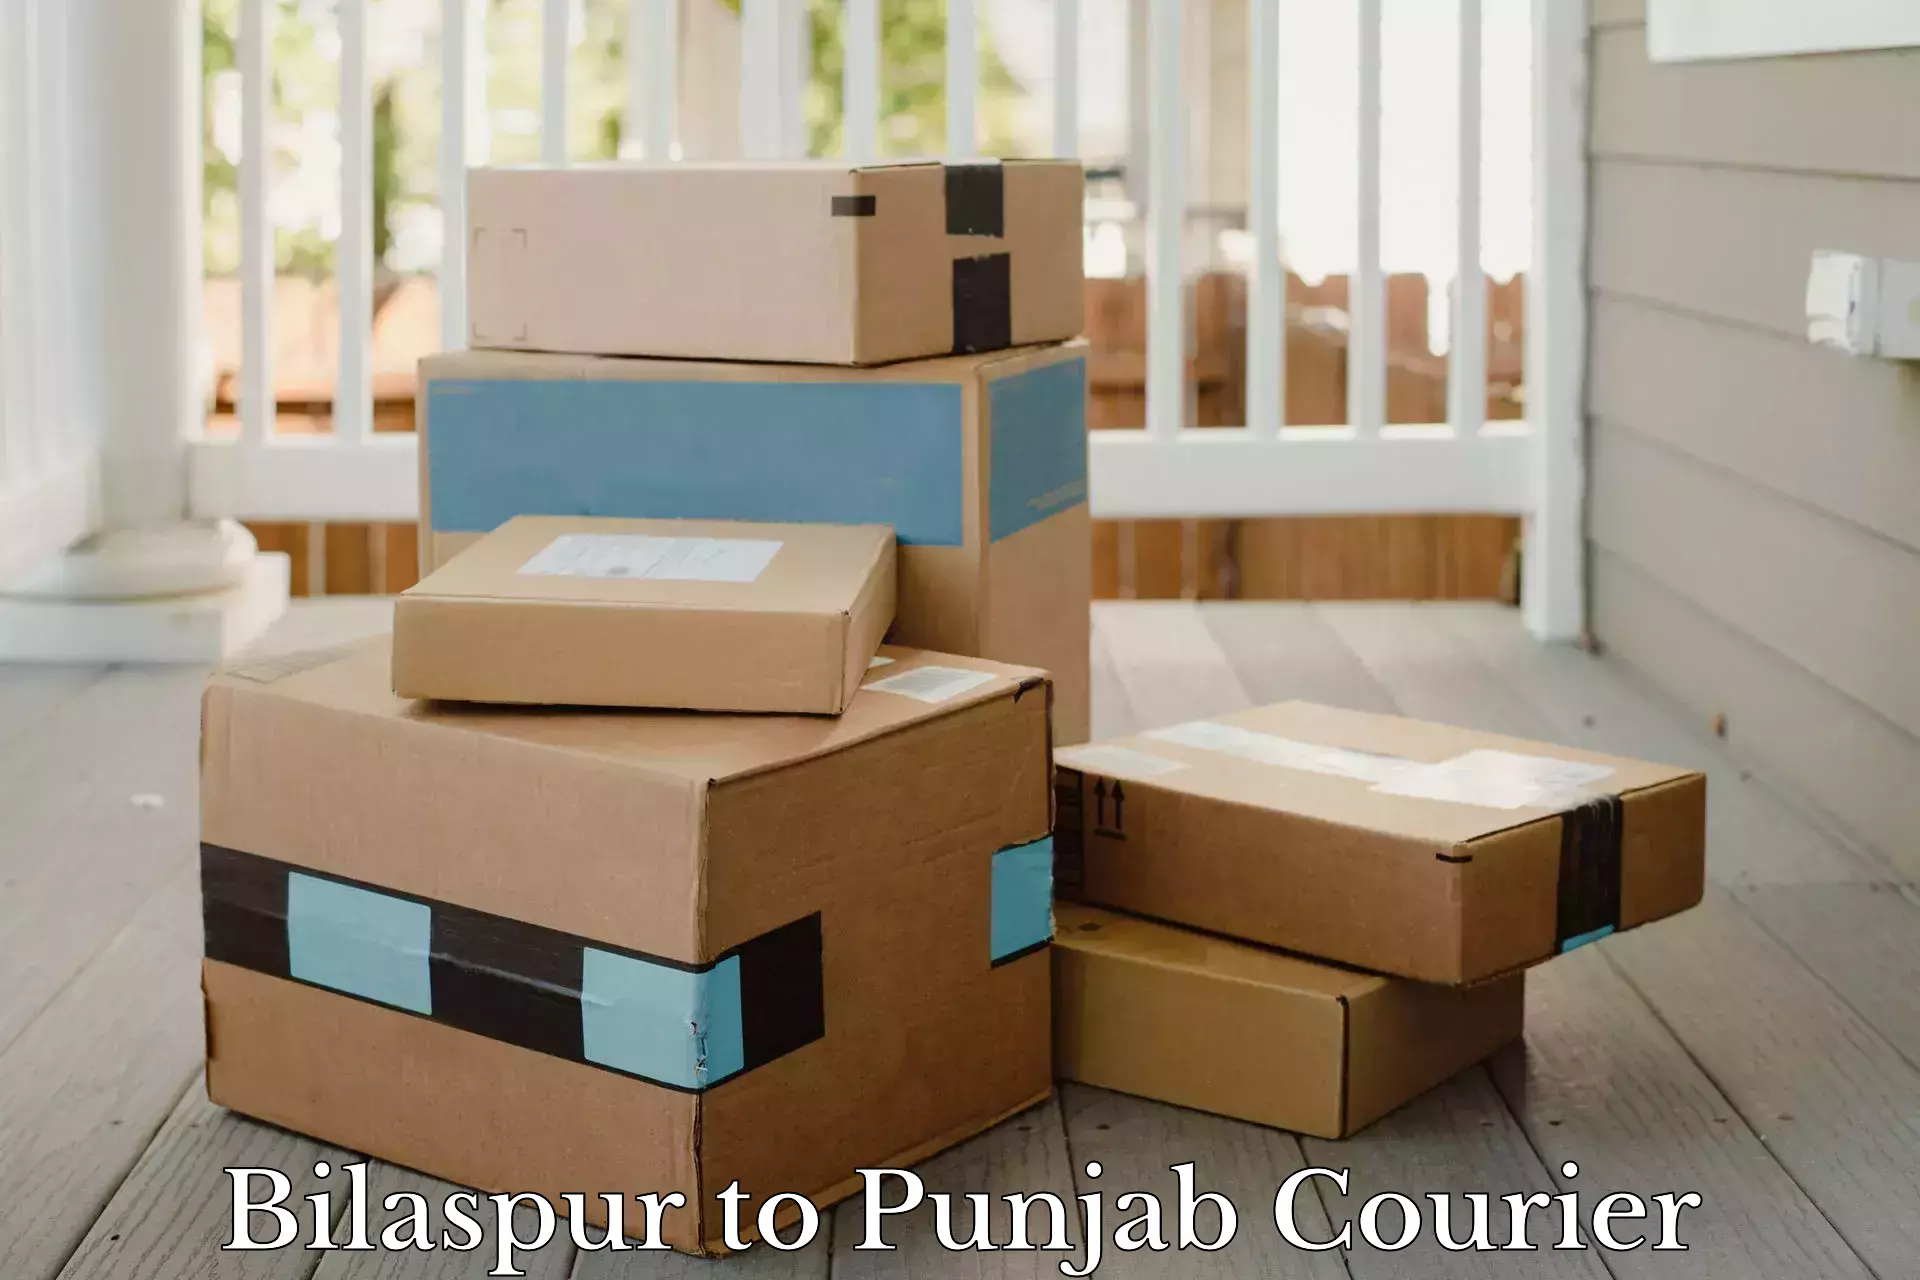 Multi-carrier shipping Bilaspur to Punjab